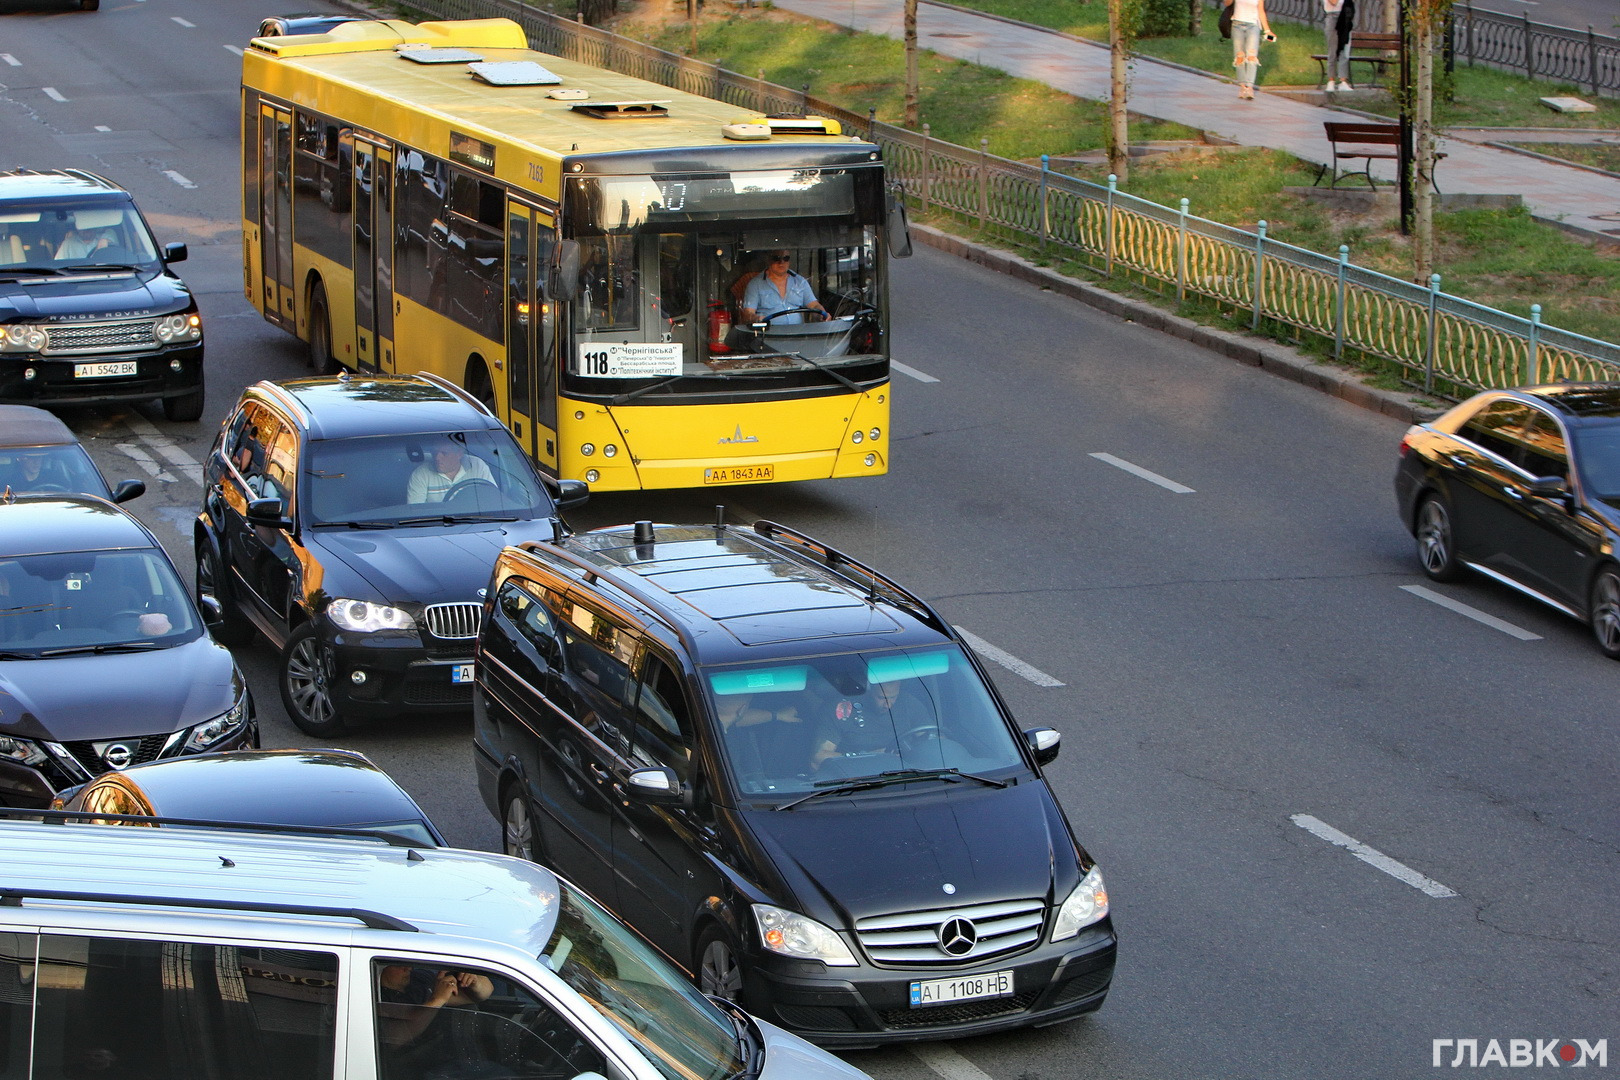 Автівки супроводу політиків заважали безпечному проїзду громадського транспорту